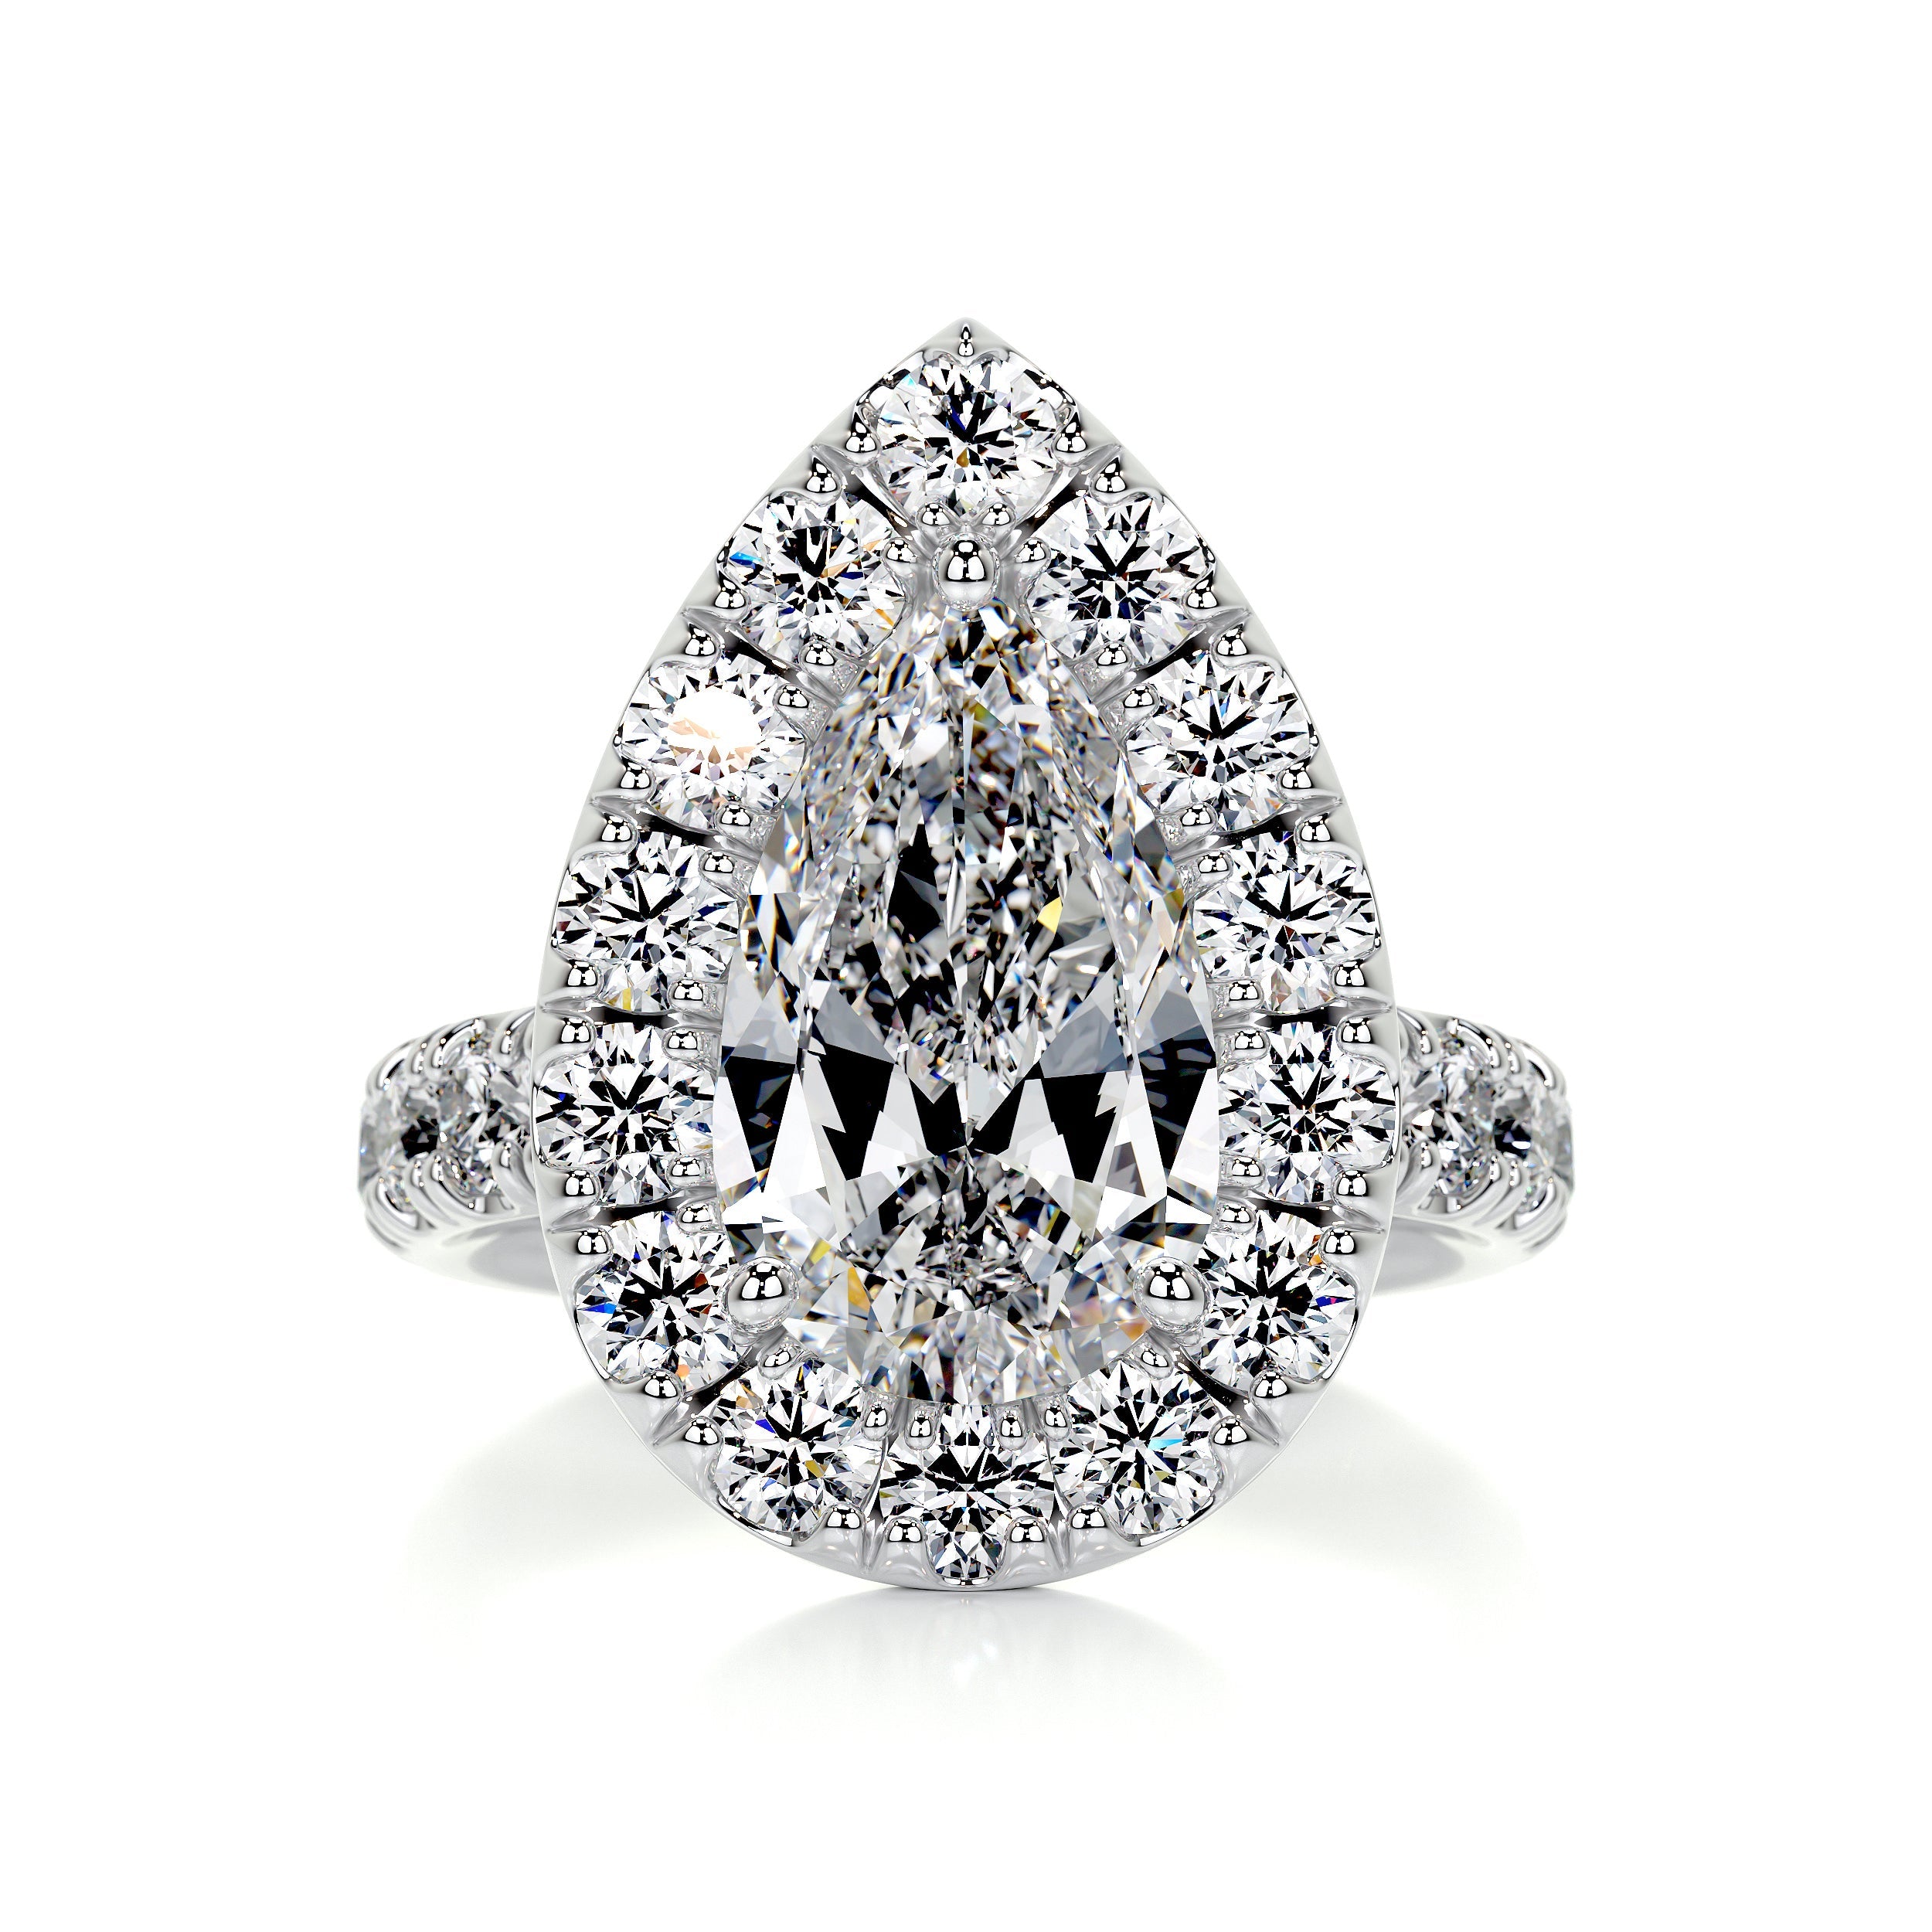 Maya Diamond Engagement Ring   (4 Carat) -14K White Gold (RTS)